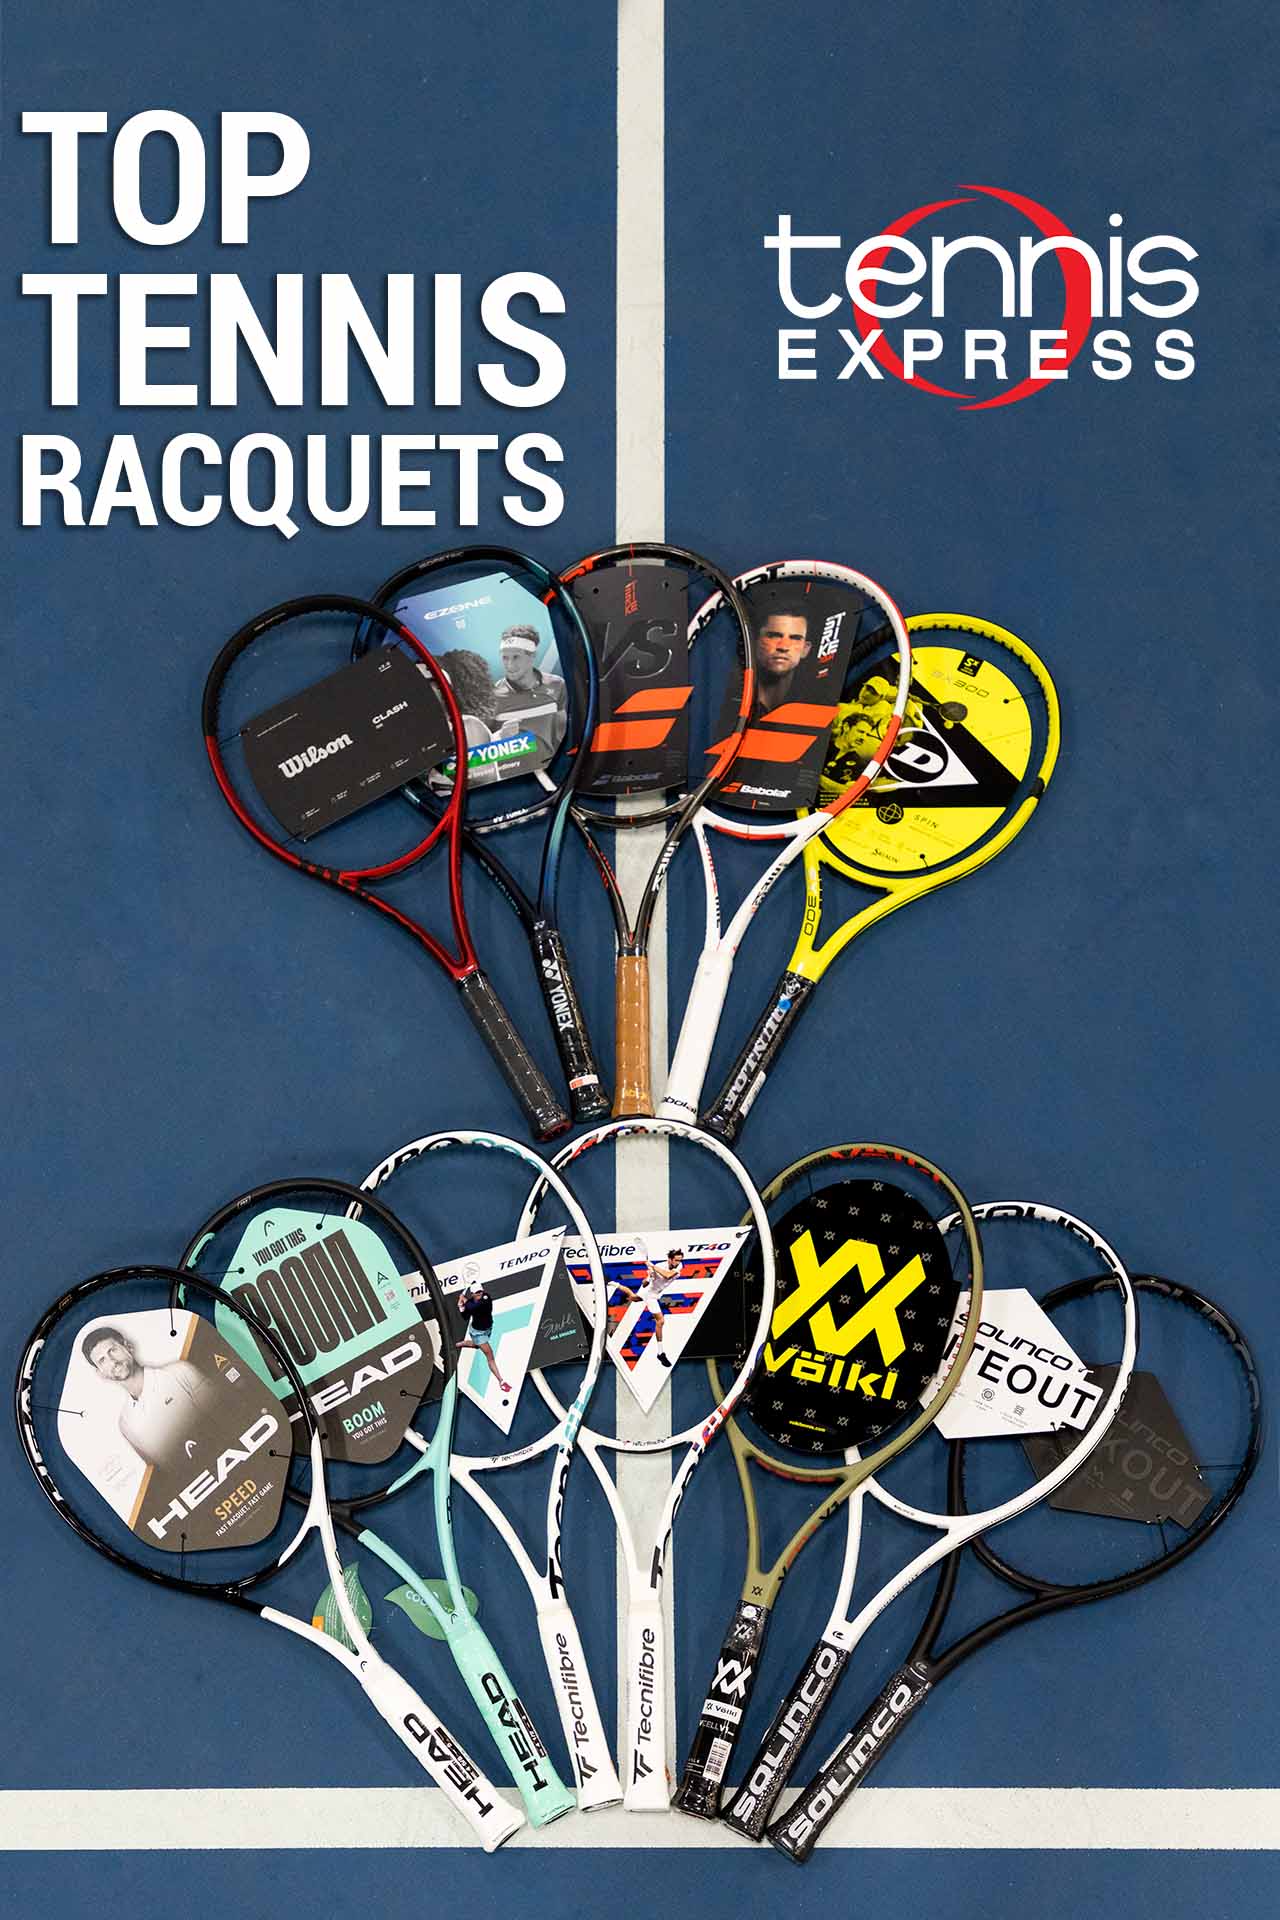 Top Tennis Racquets